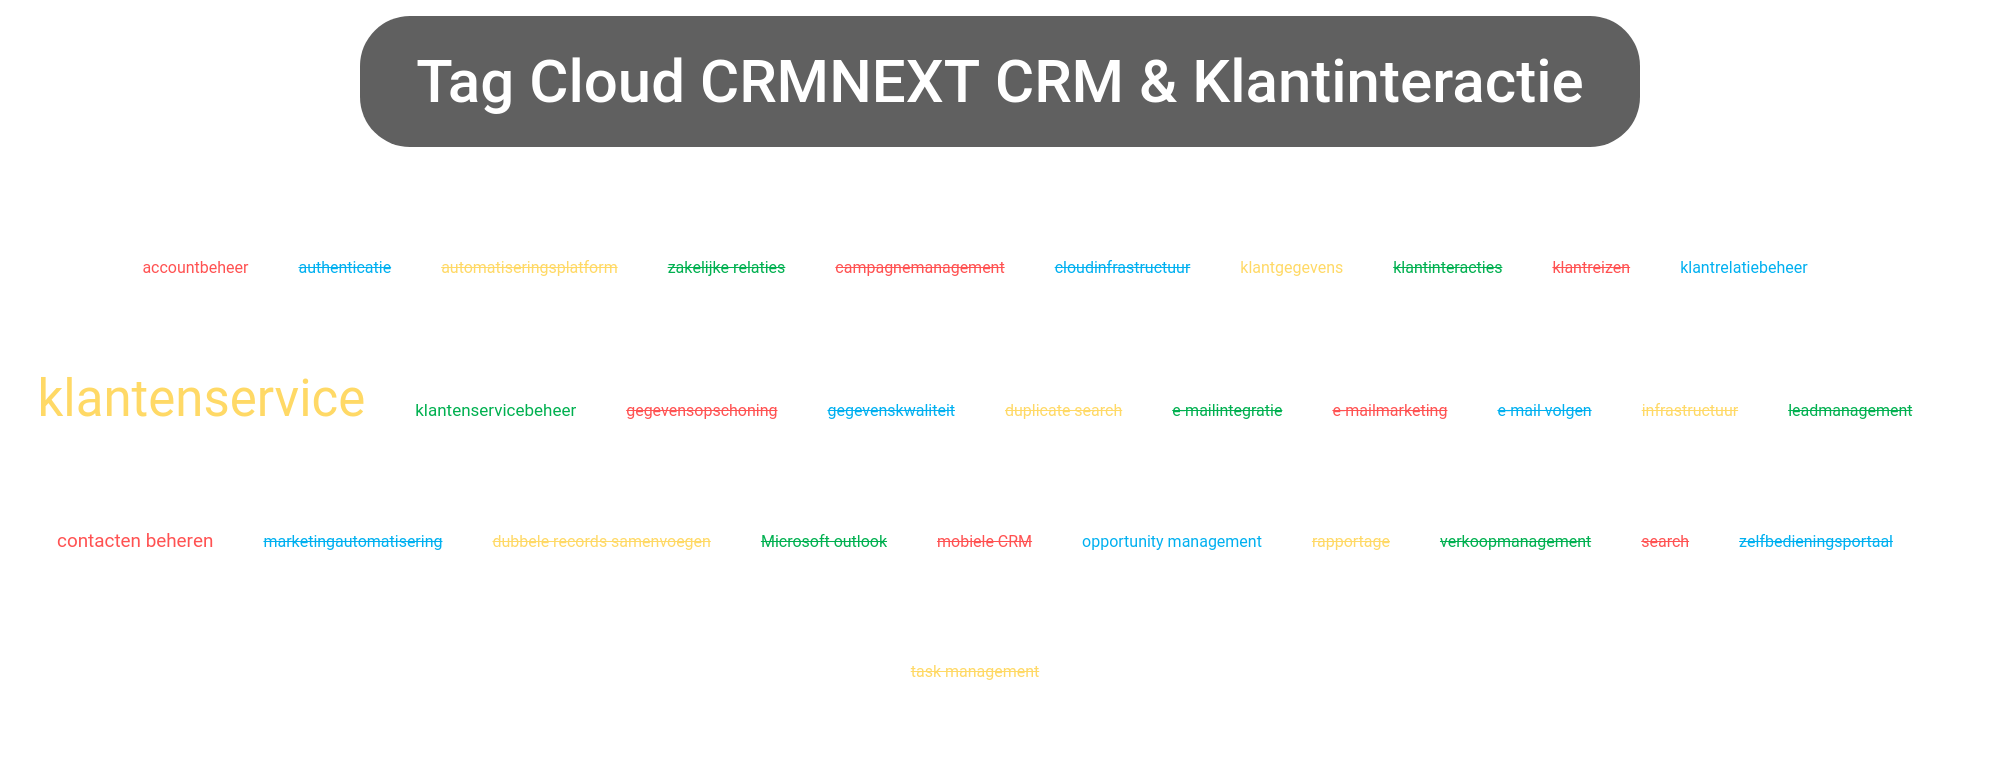 Tag cloud van CRMNEXT CRM tools.